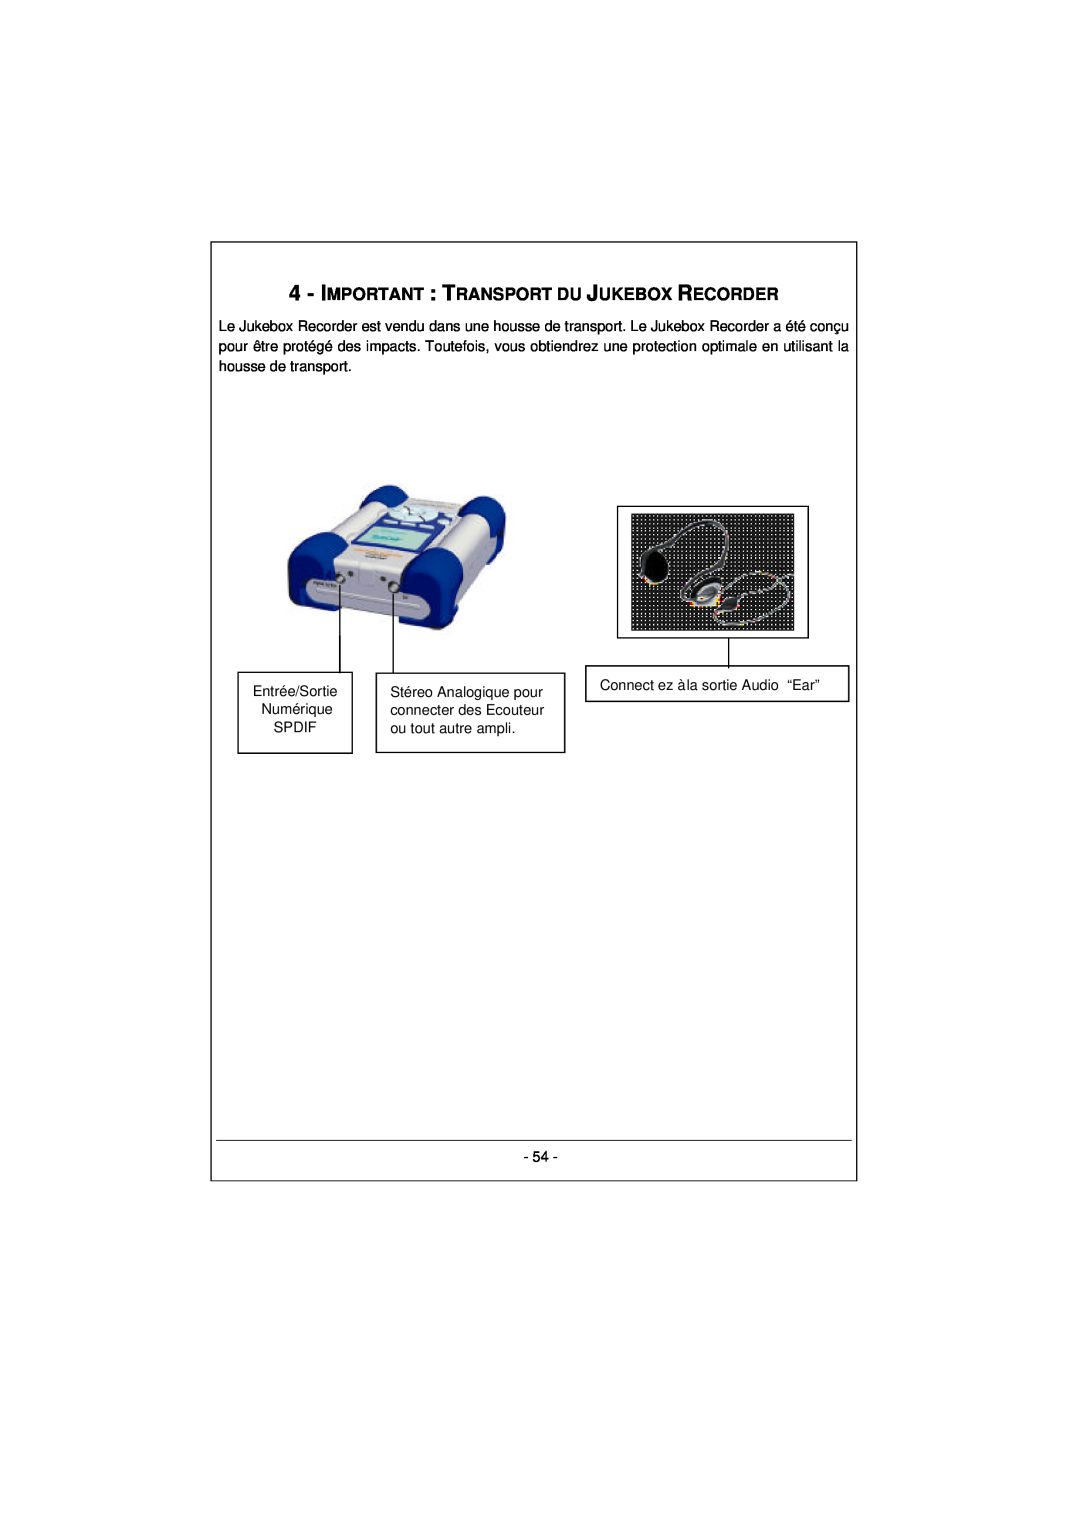 Archos 100628 Important : Transport Du Jukebox Recorder, Entrée/Sortie Numérique SPDIF, Connect ez à la sortie Audio “Ear” 